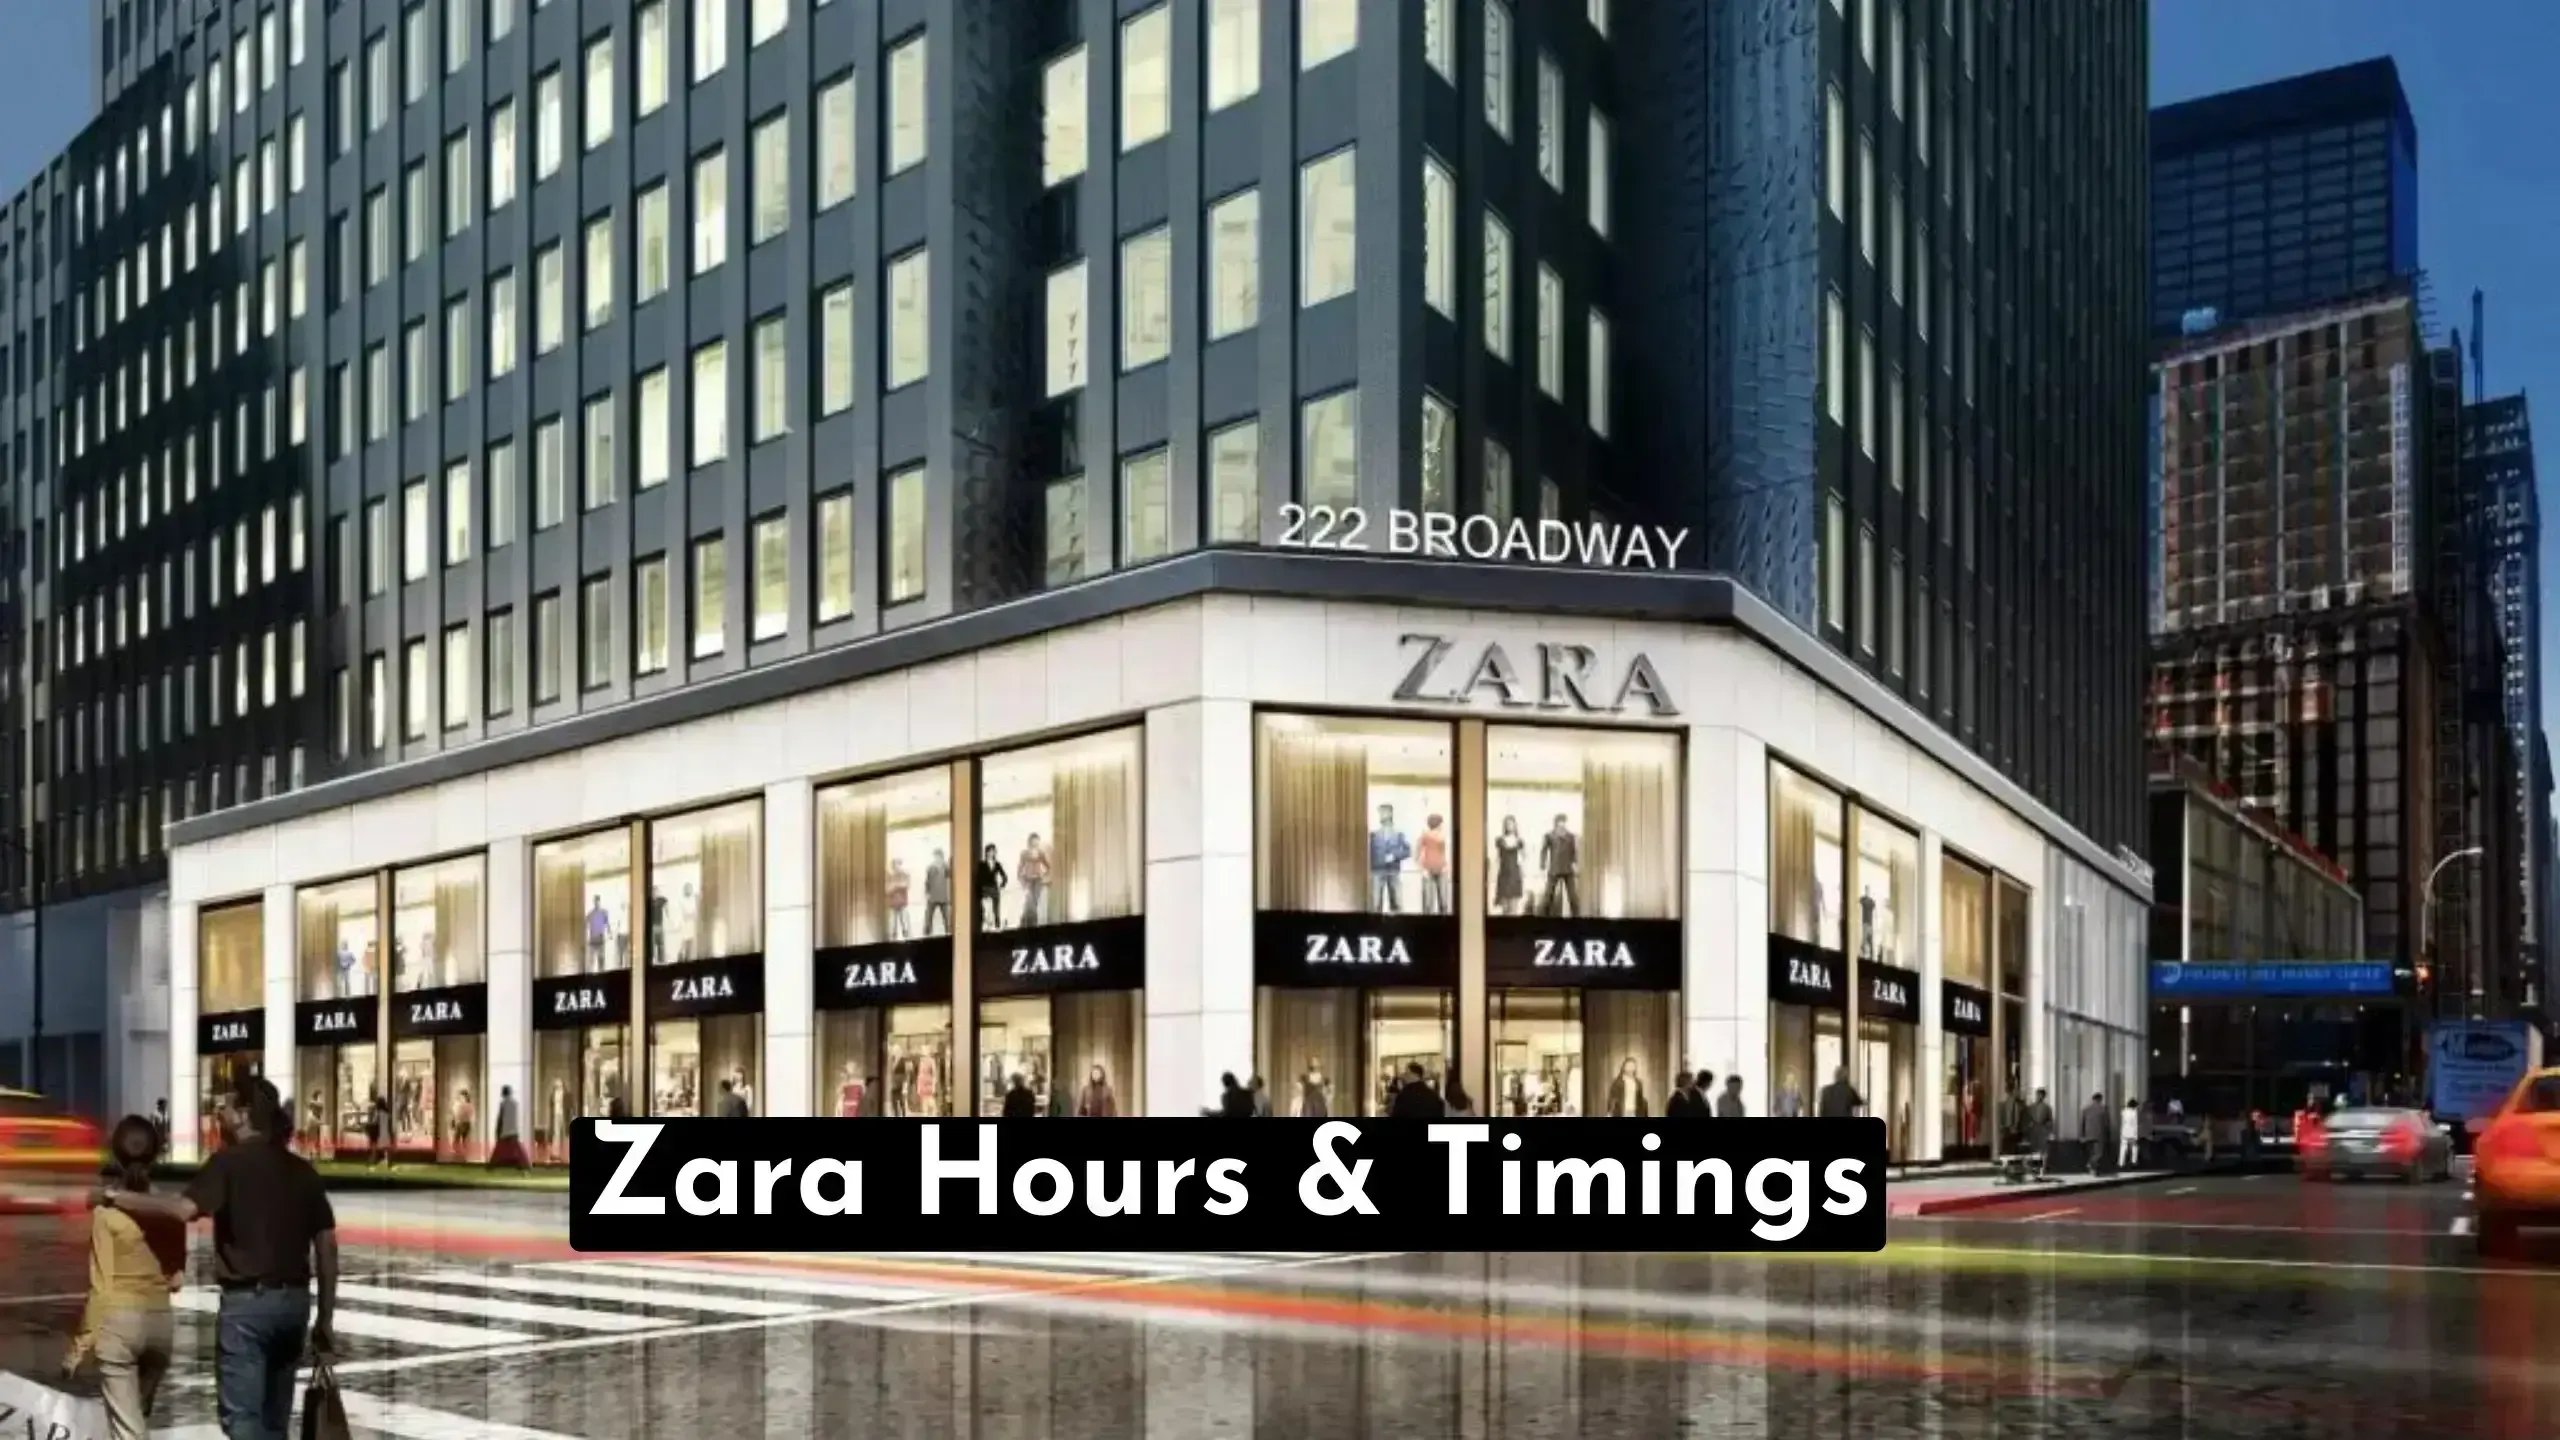 Zara Hours: